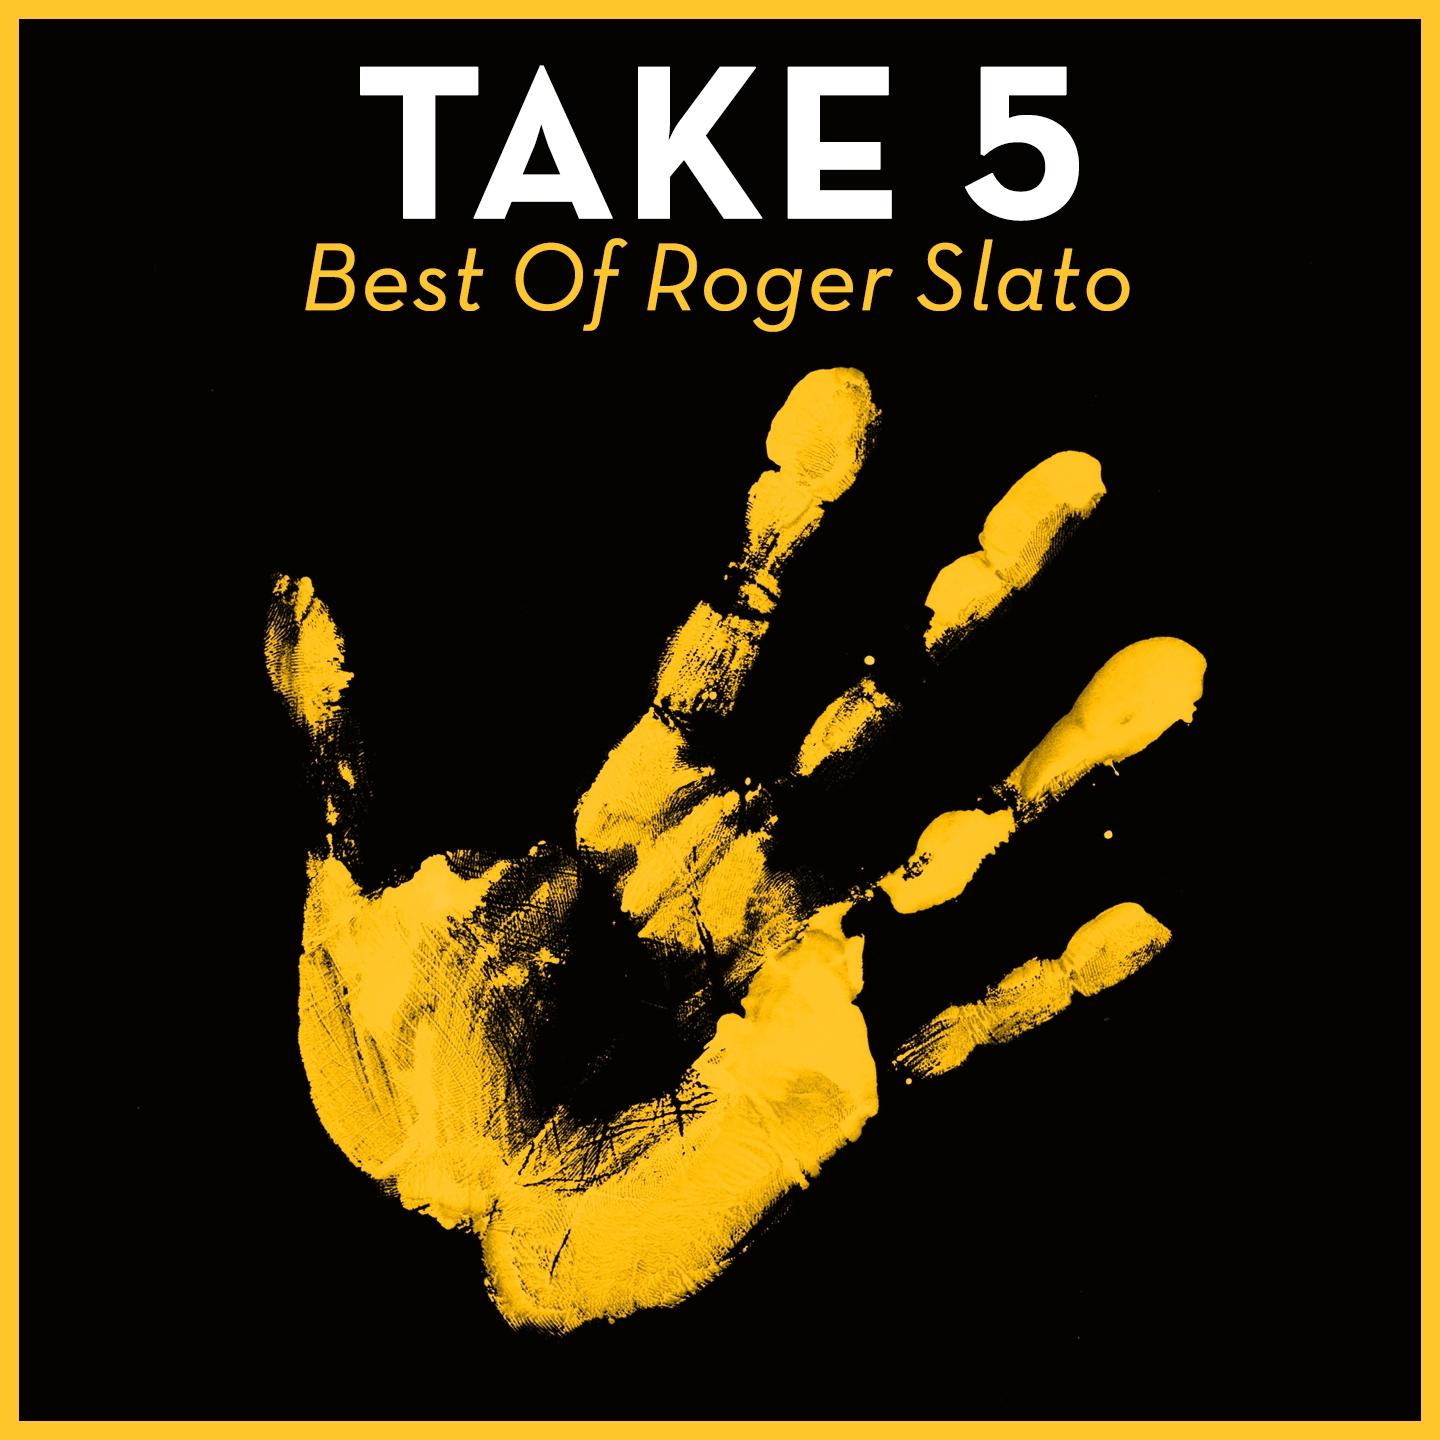 Take 5 - Best Of Roger Slato